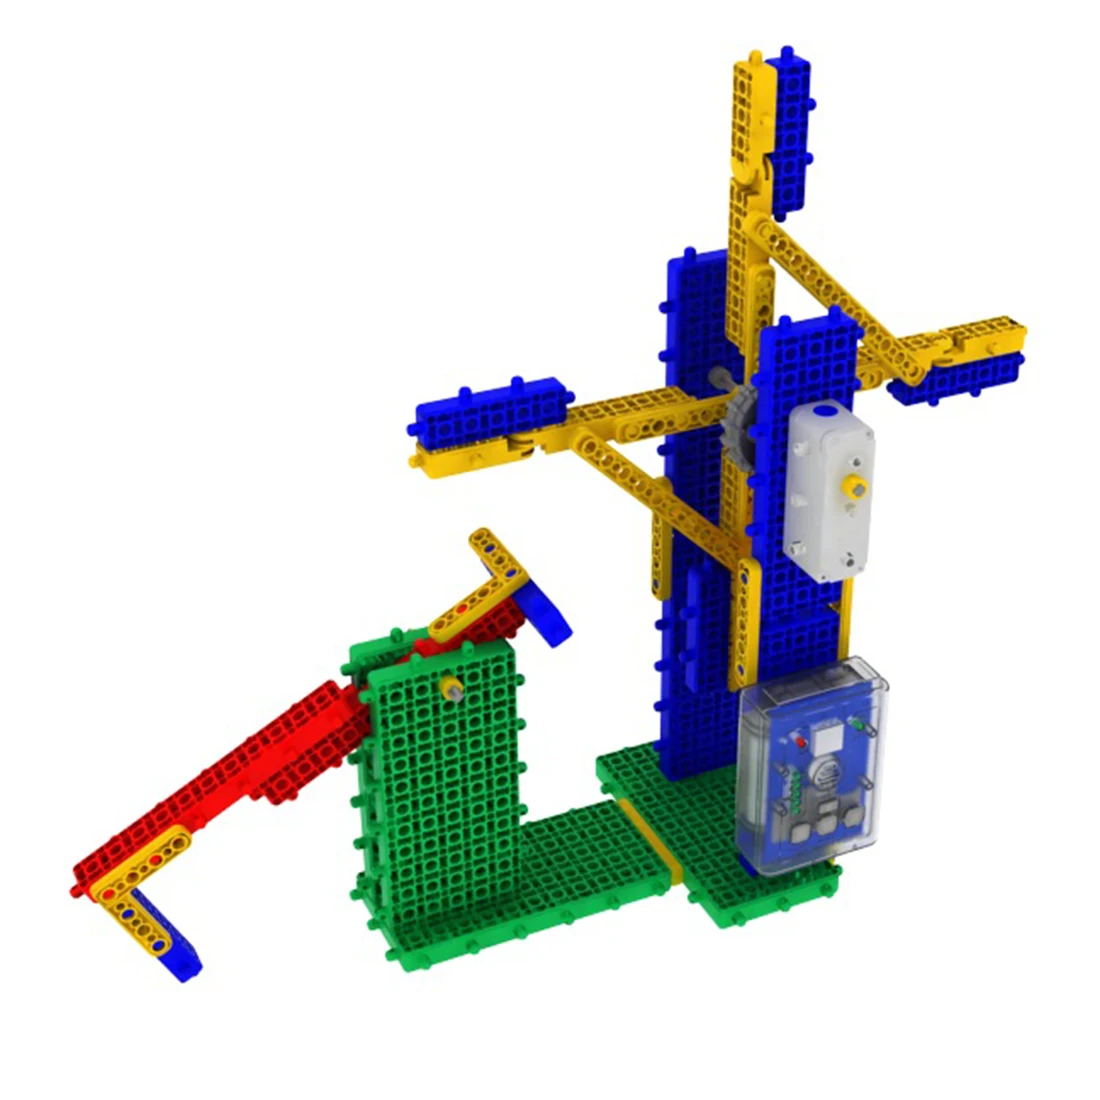 My Robot Time MRT 1-Brain A Красочные роботы Bulding Block Kit сборка обучающая игрушка-робот для начинающих От 6 до 8 лет